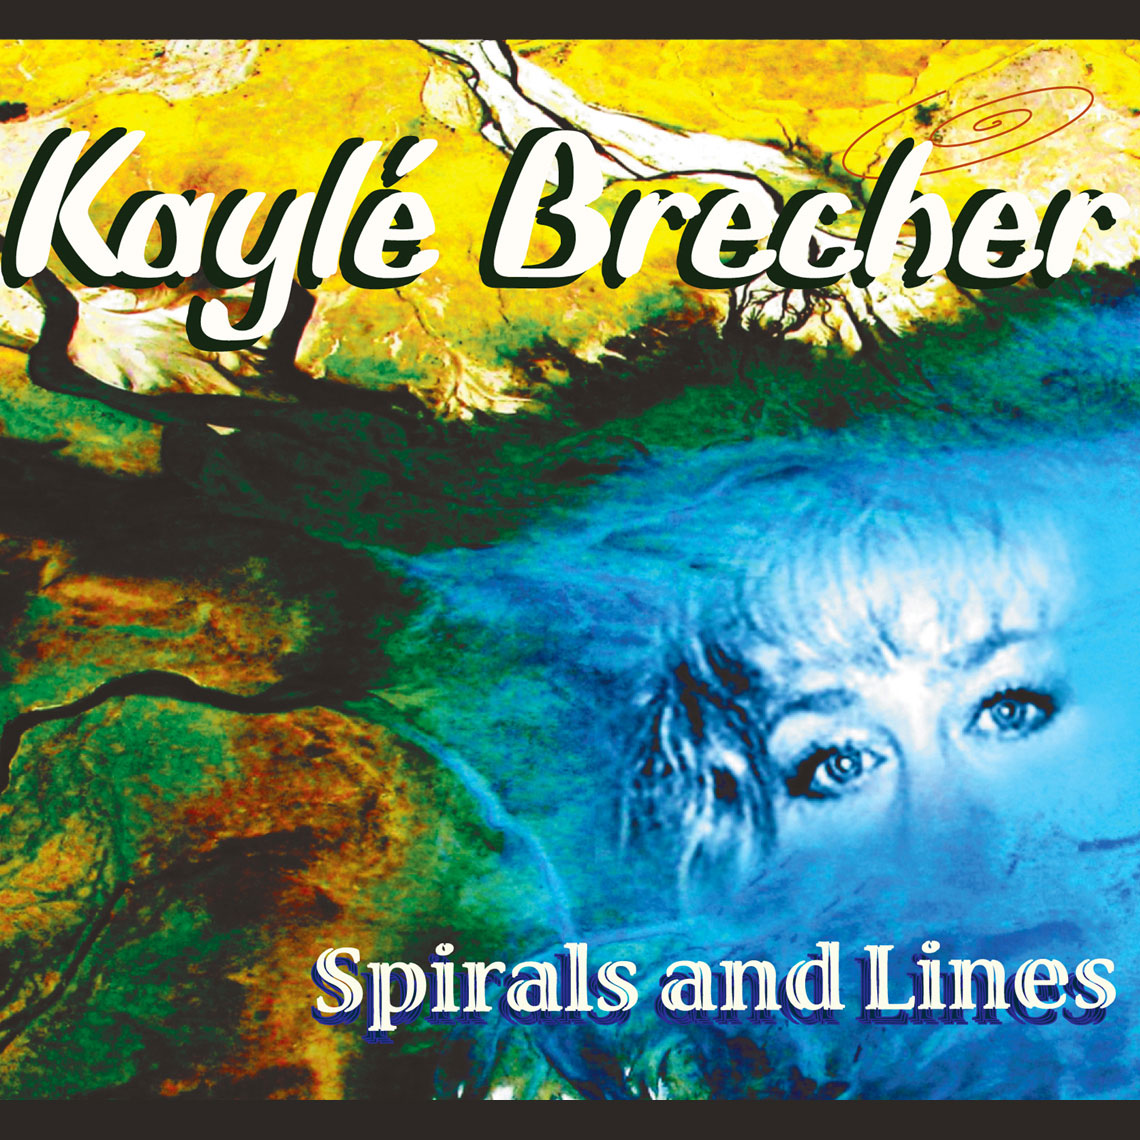 SPIRALS and LINESS by Kaylé Brecher